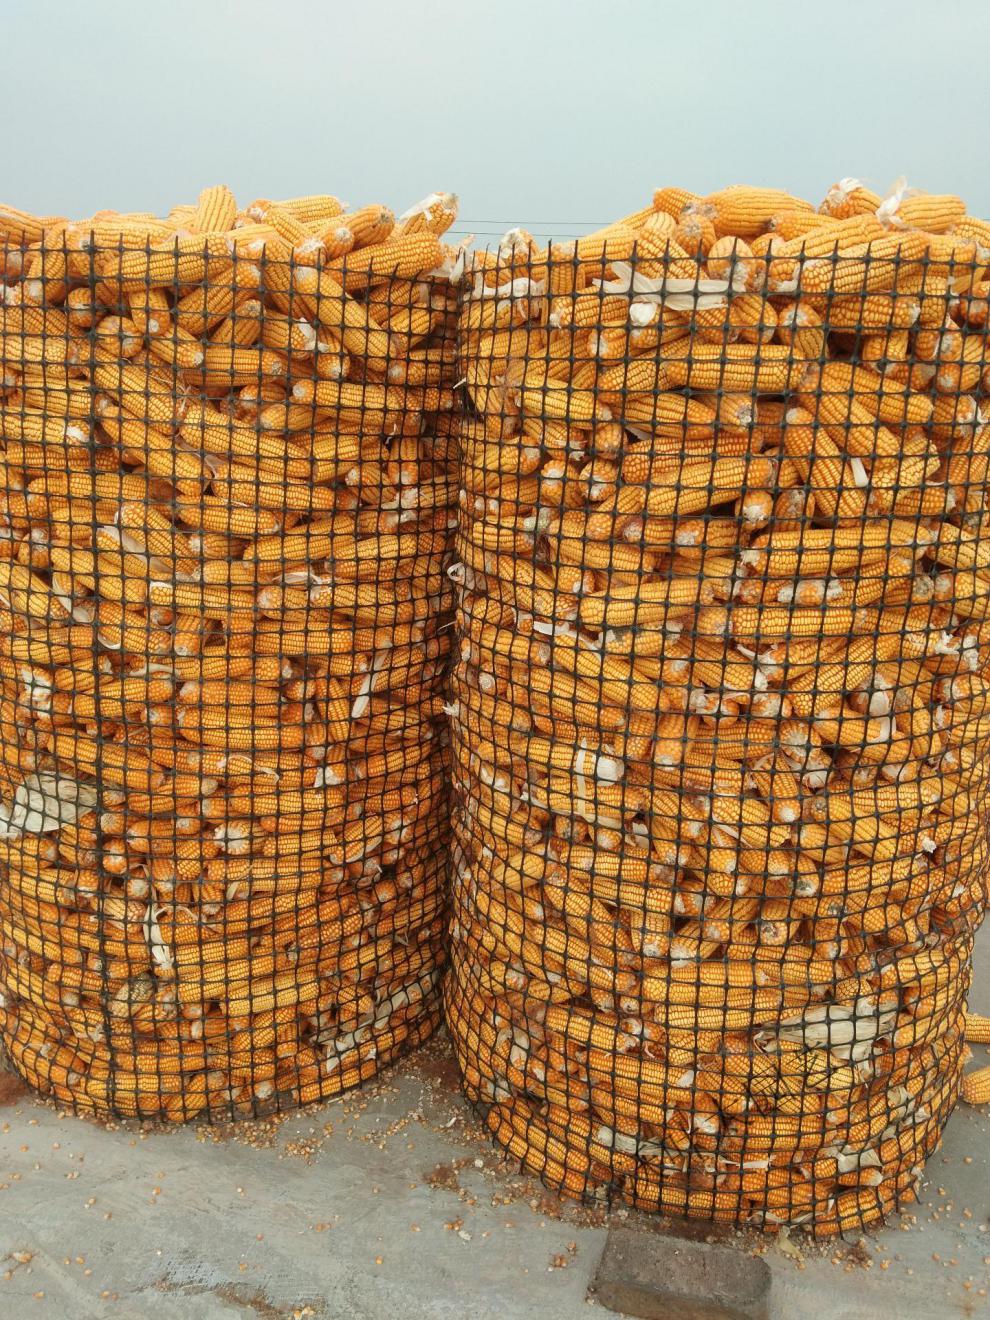 圈玉米网装棒子塑料网玉米仓储架子网加厚苞米楼子围栏网玉米仓网 1